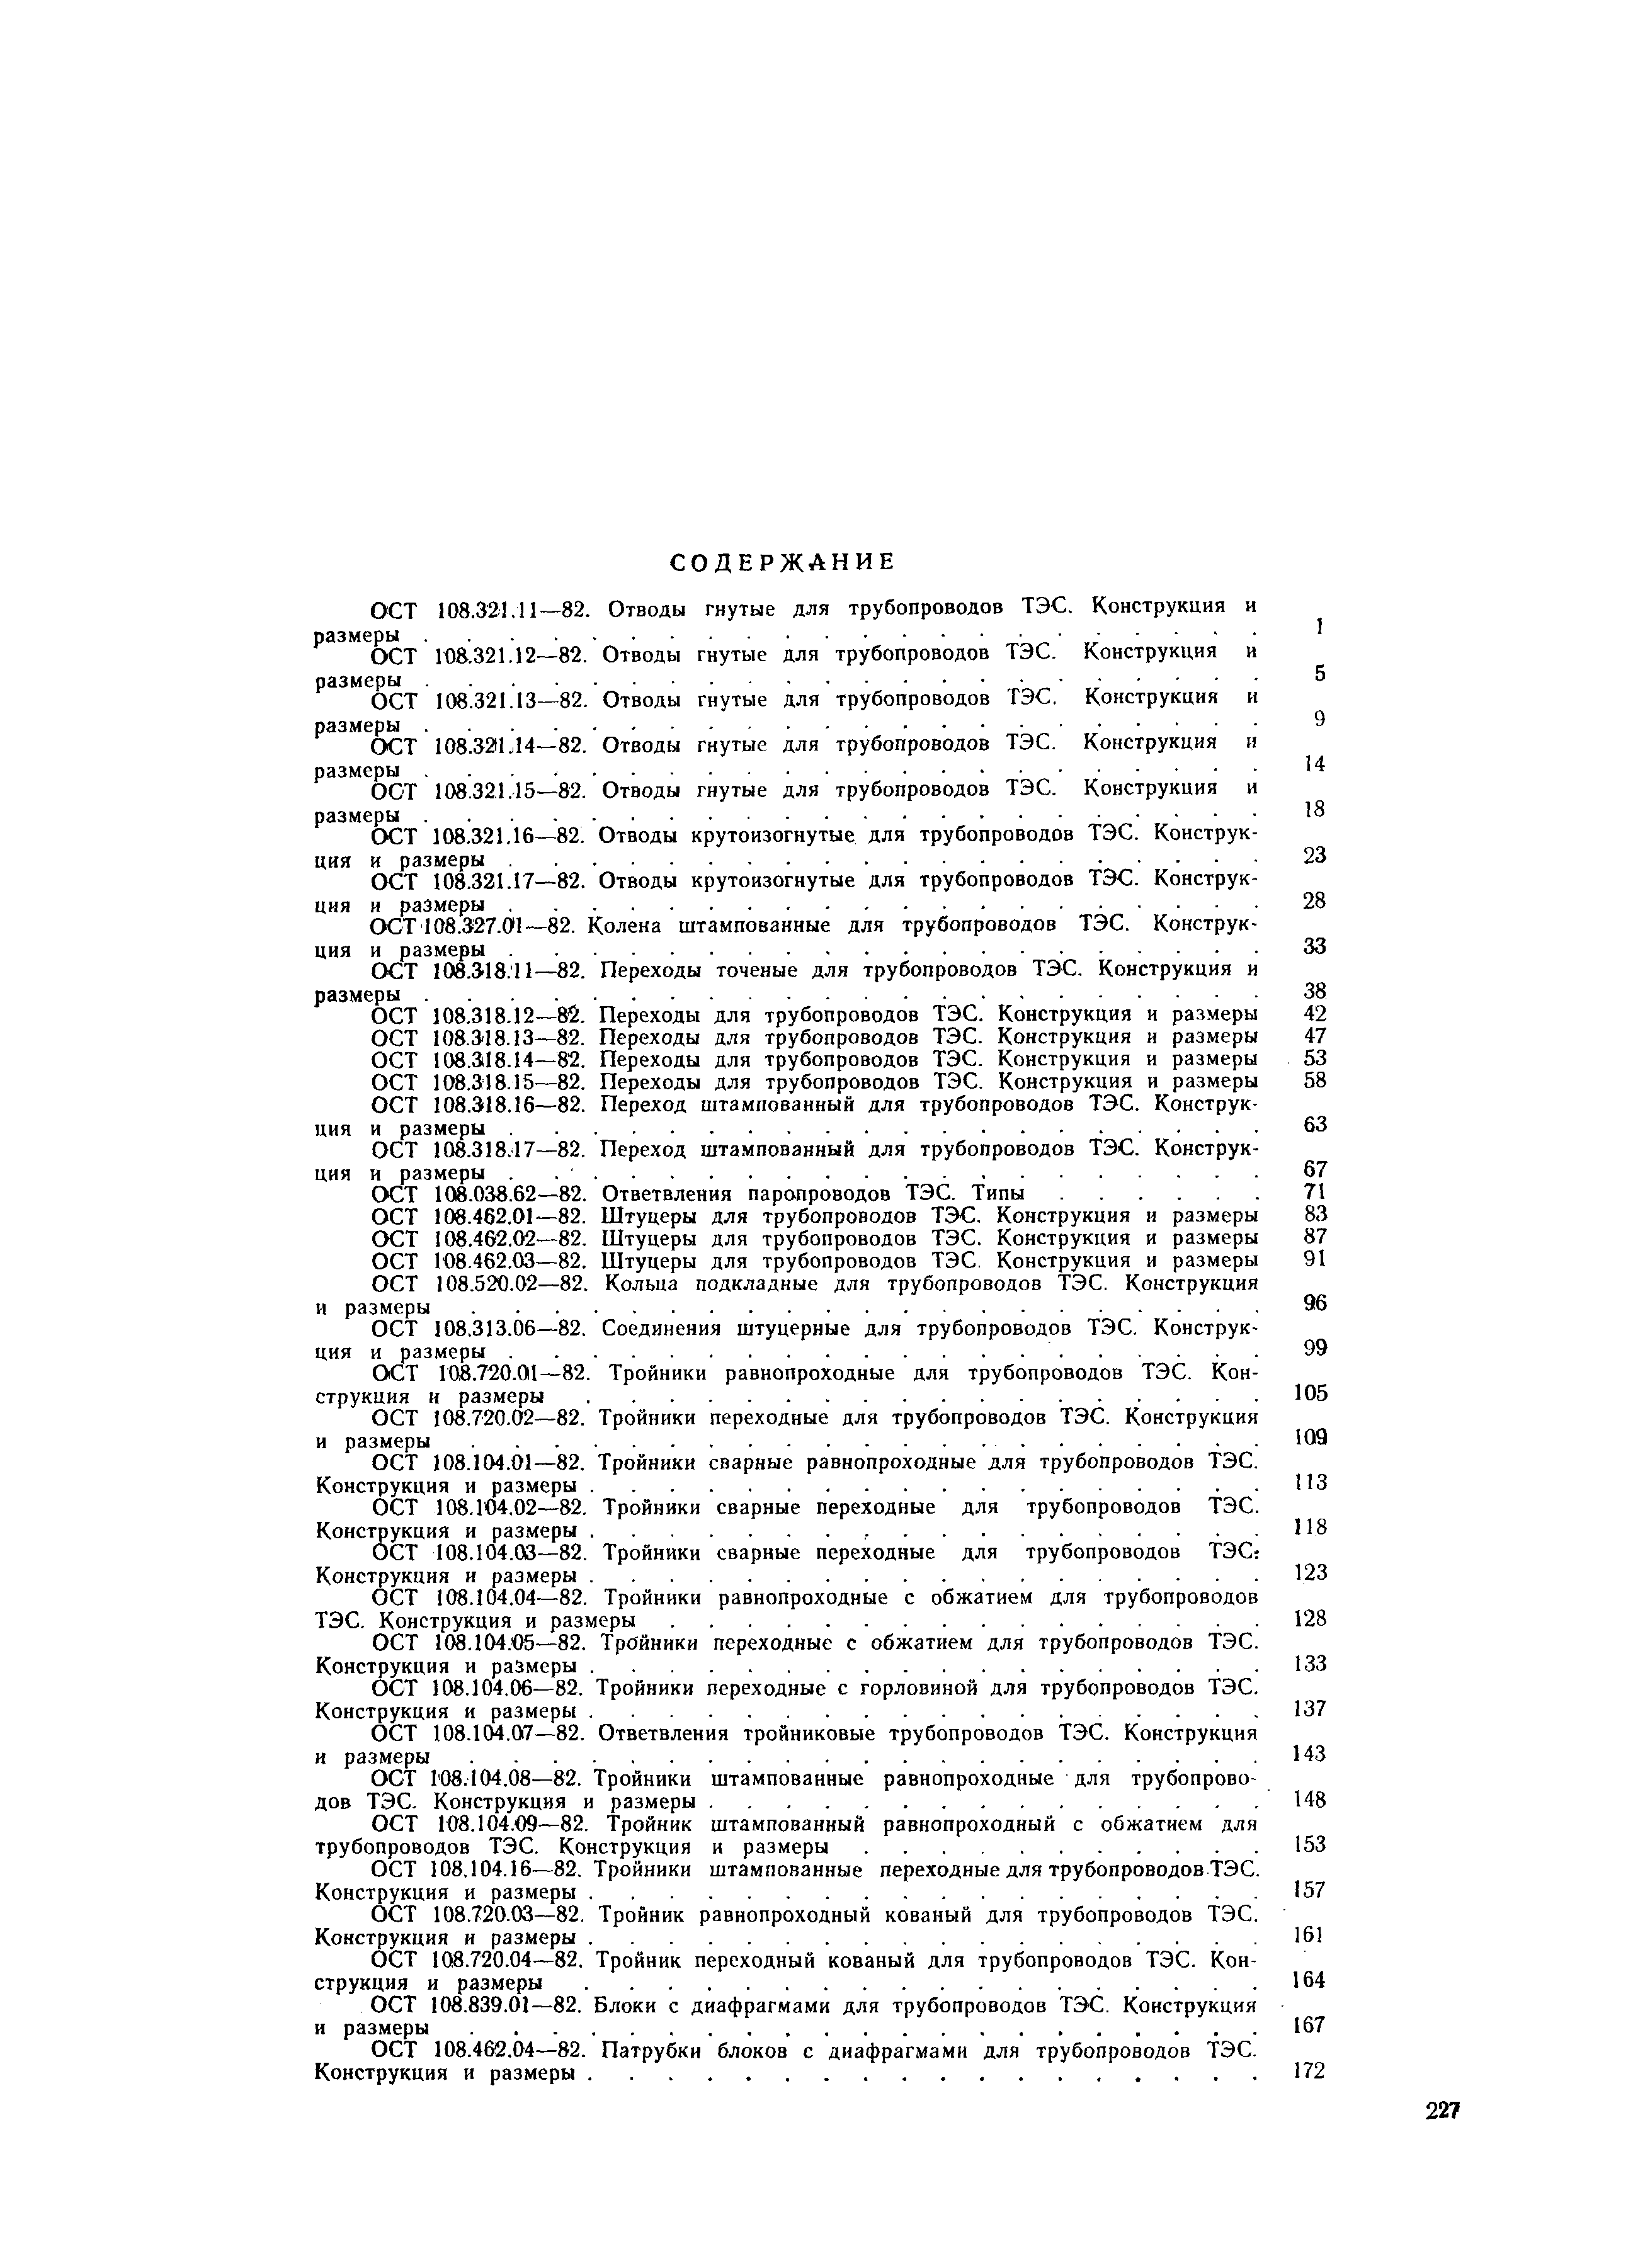 ОСТ 108.104.02-82